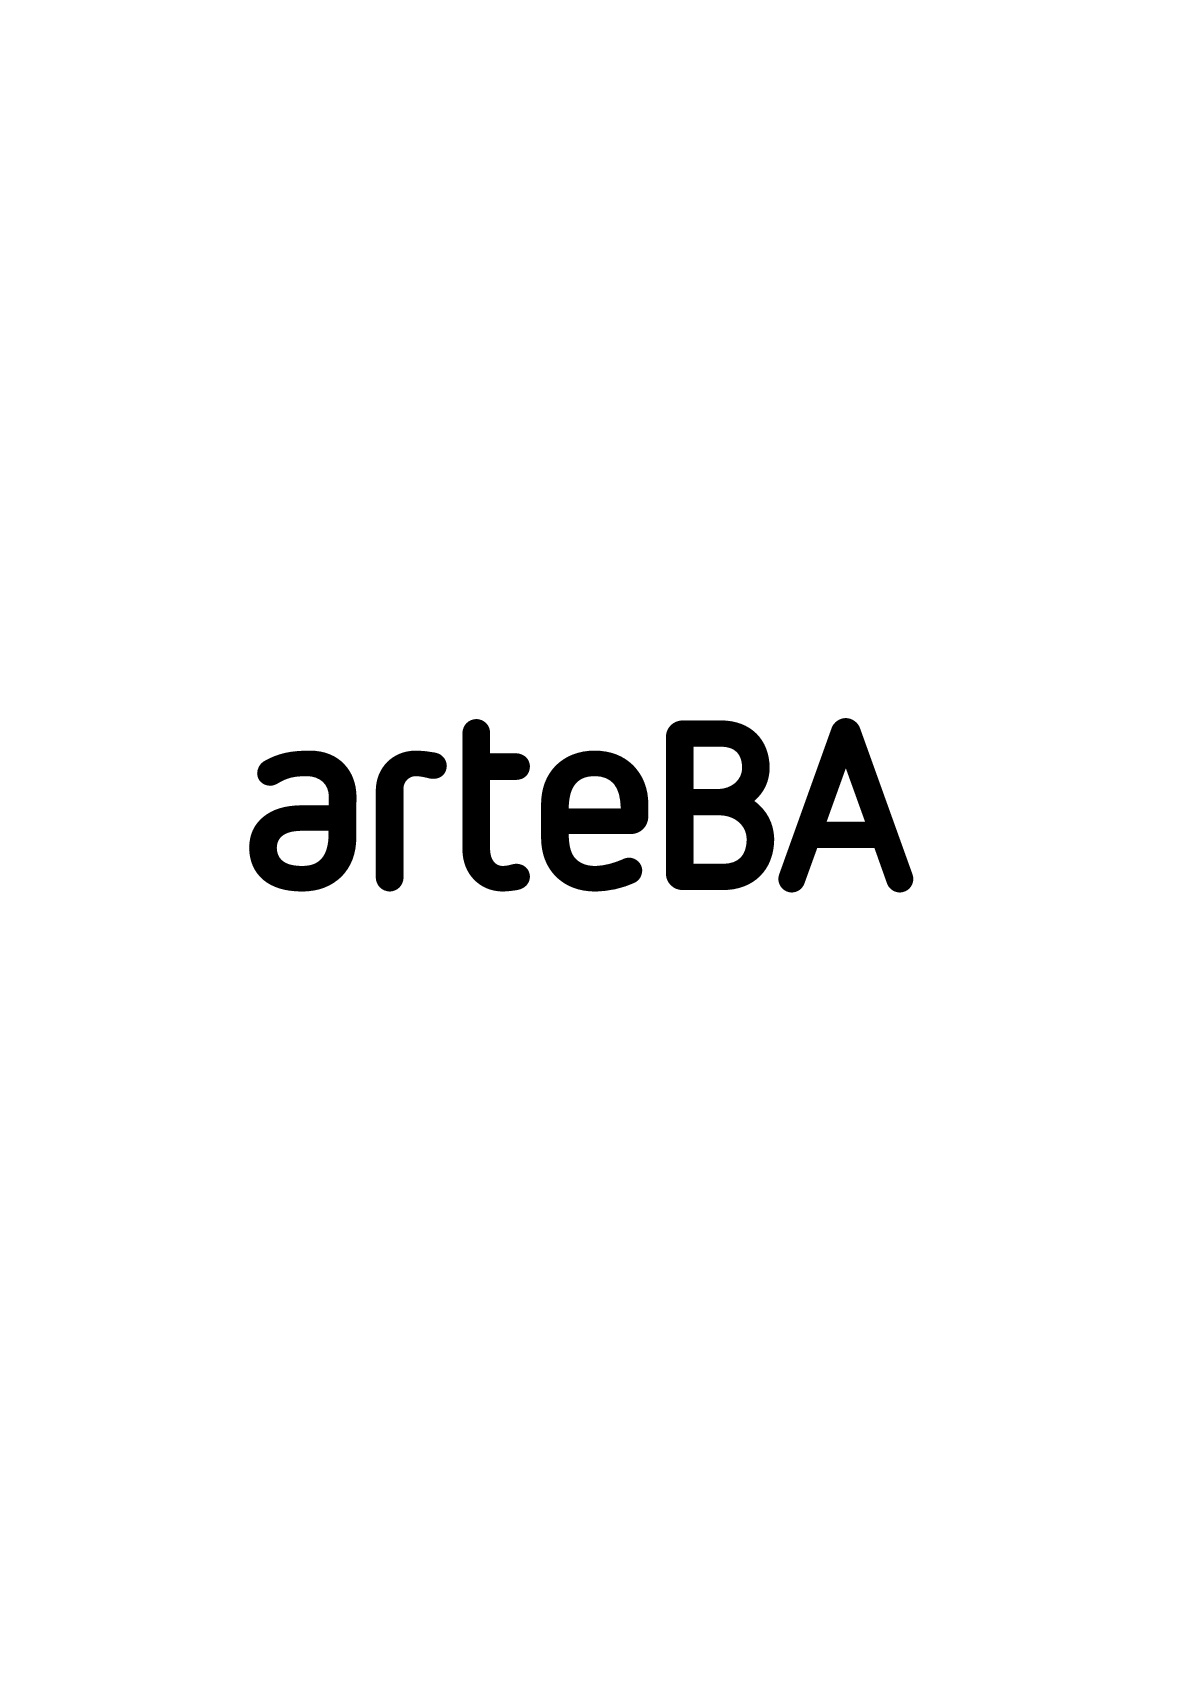 arteBA Fundación